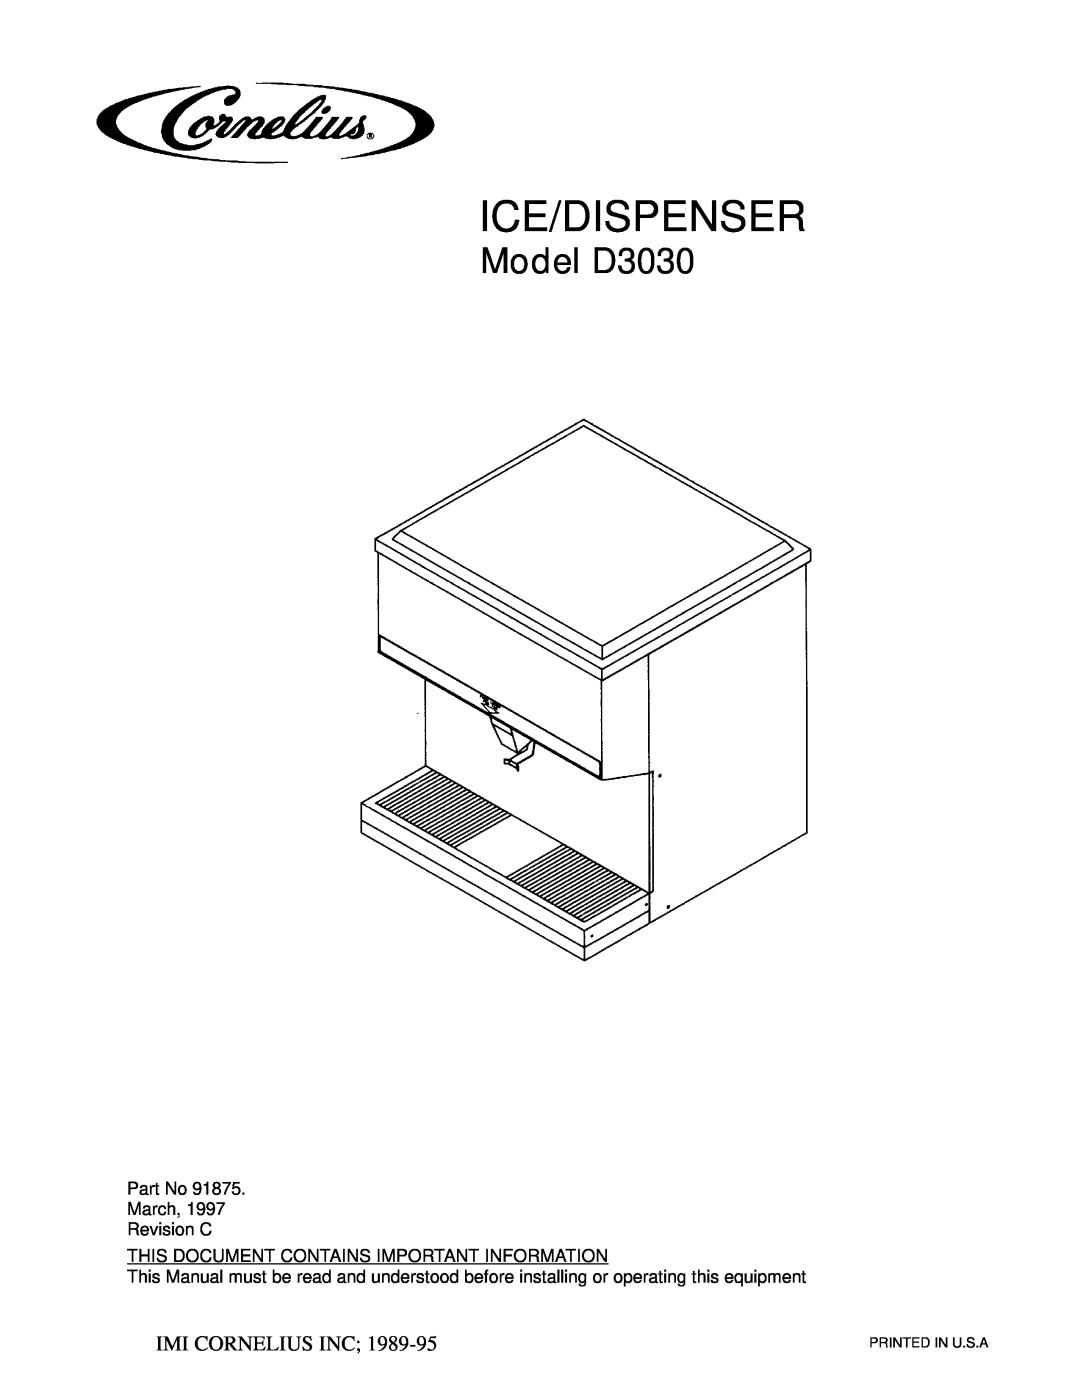 Cornelius manual Ice/Dispenser, Model D3030, Óimi Cornelius Inc 